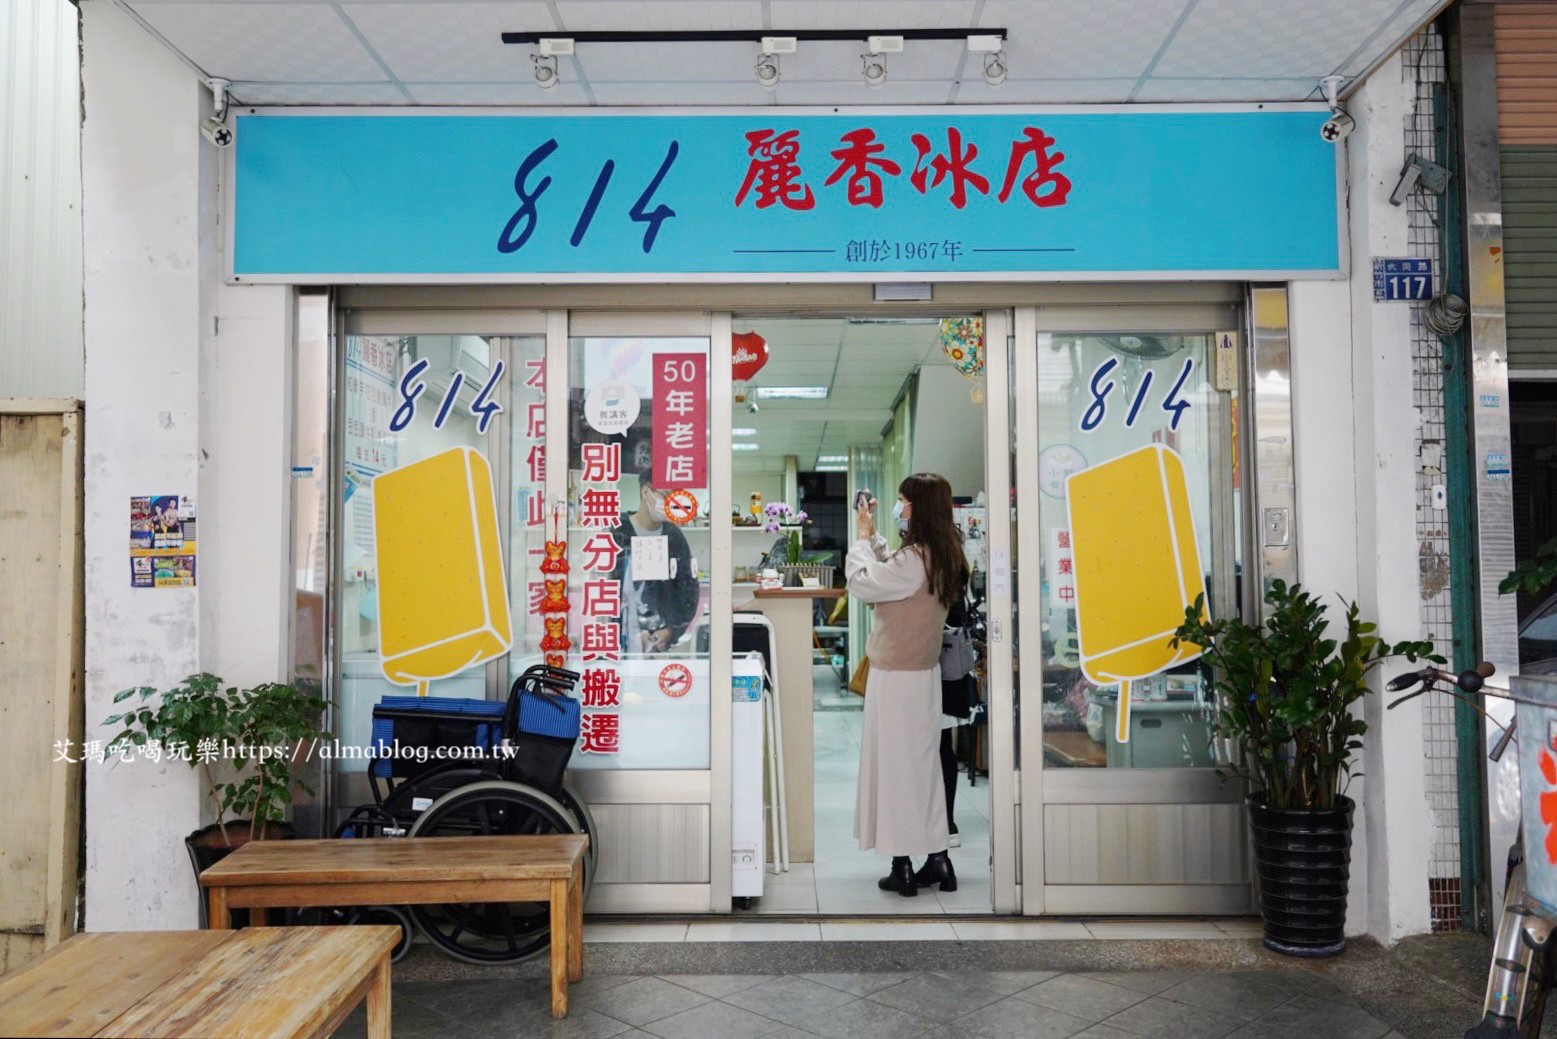 814麗香冰店